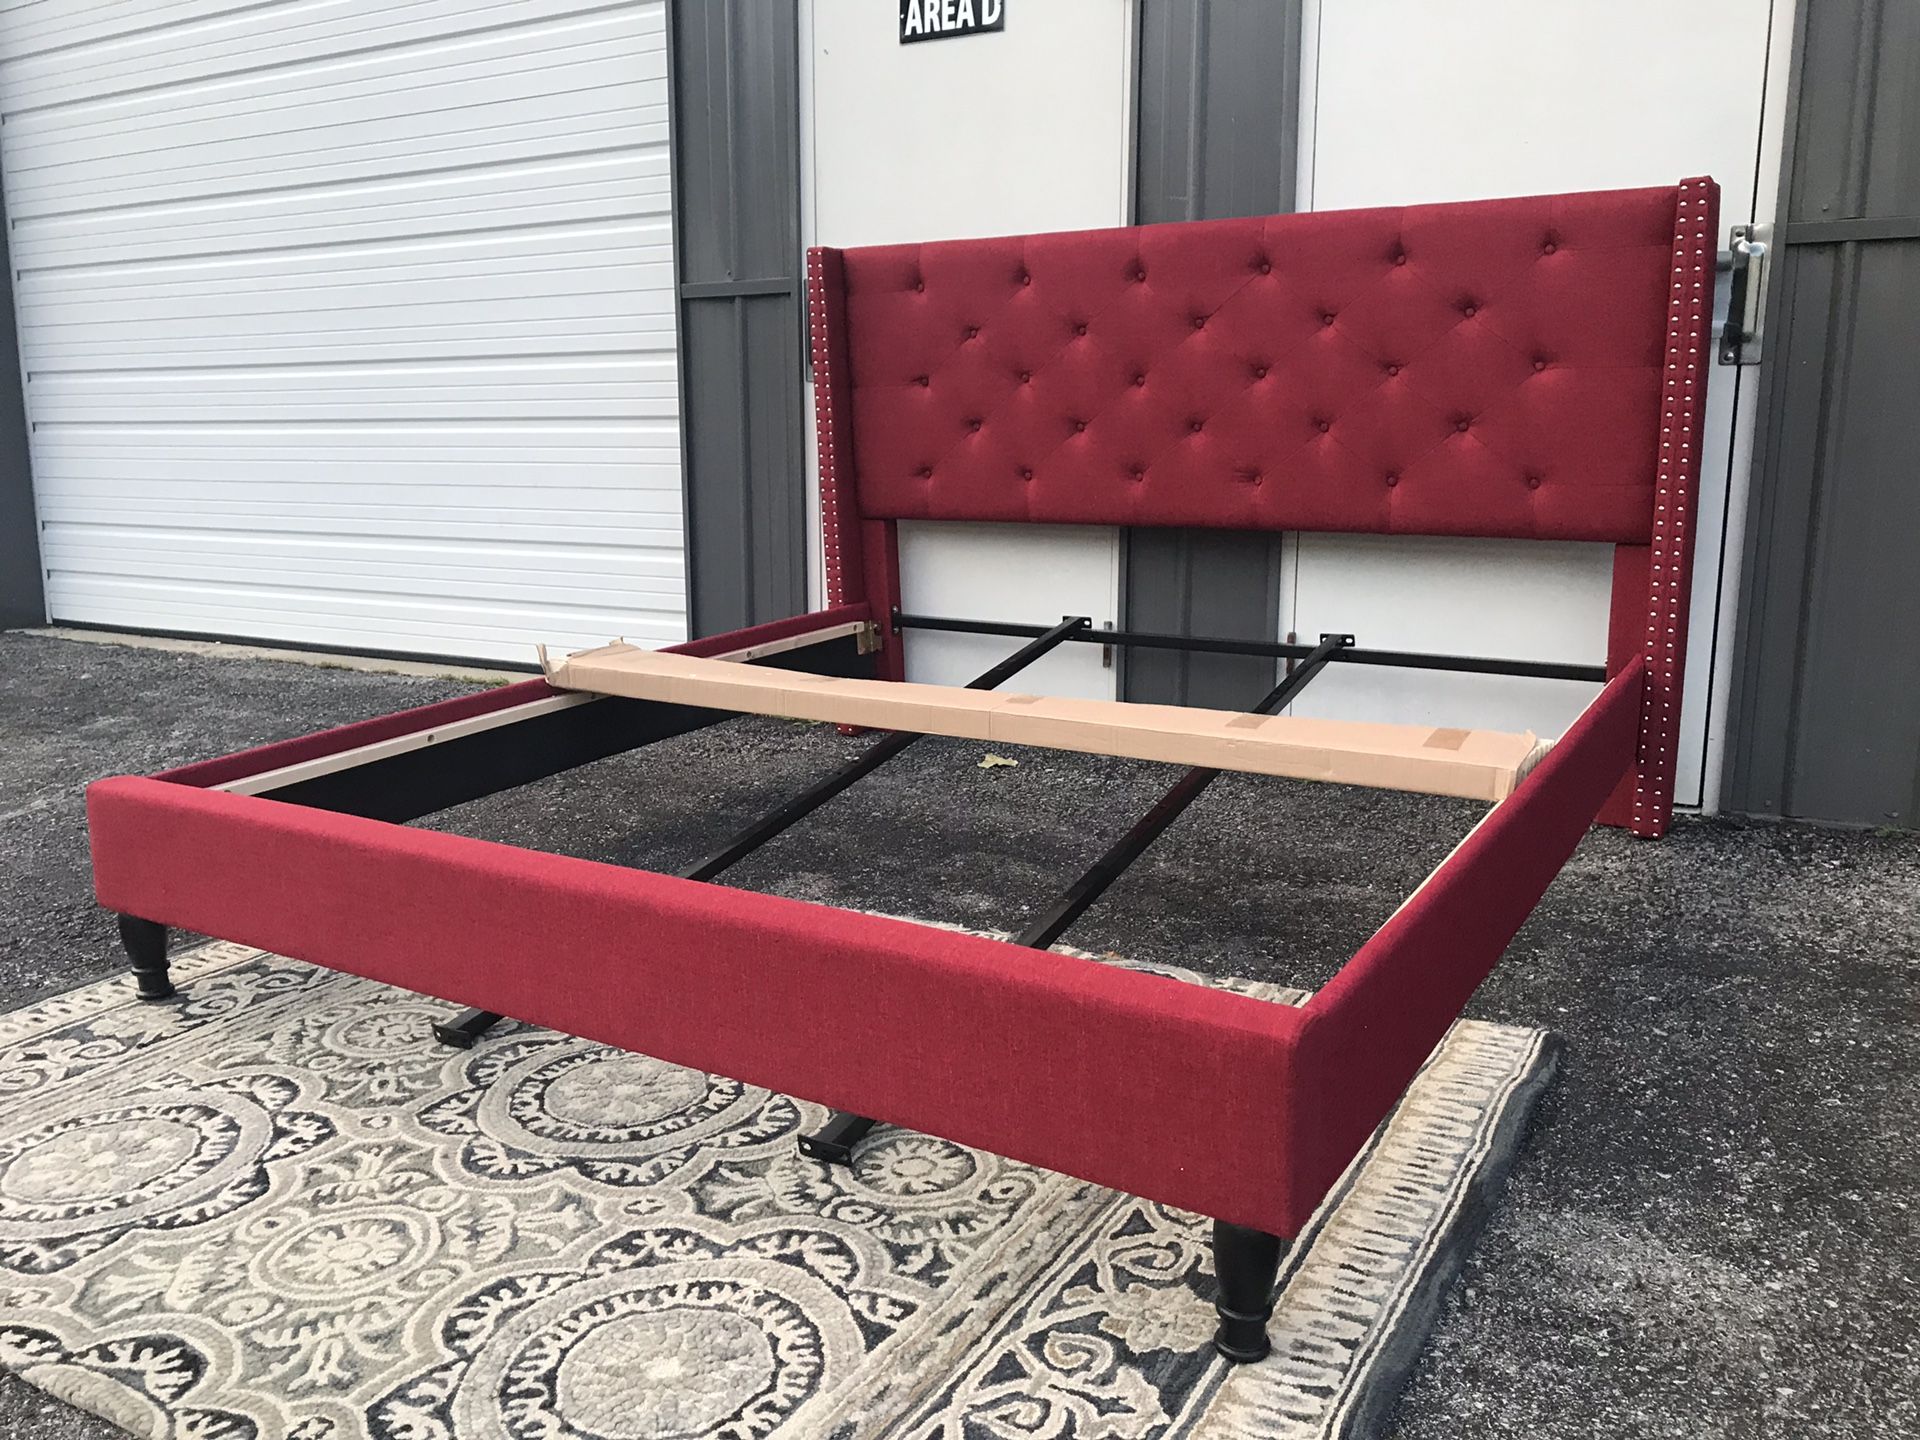 New Adorable king platform bed frame